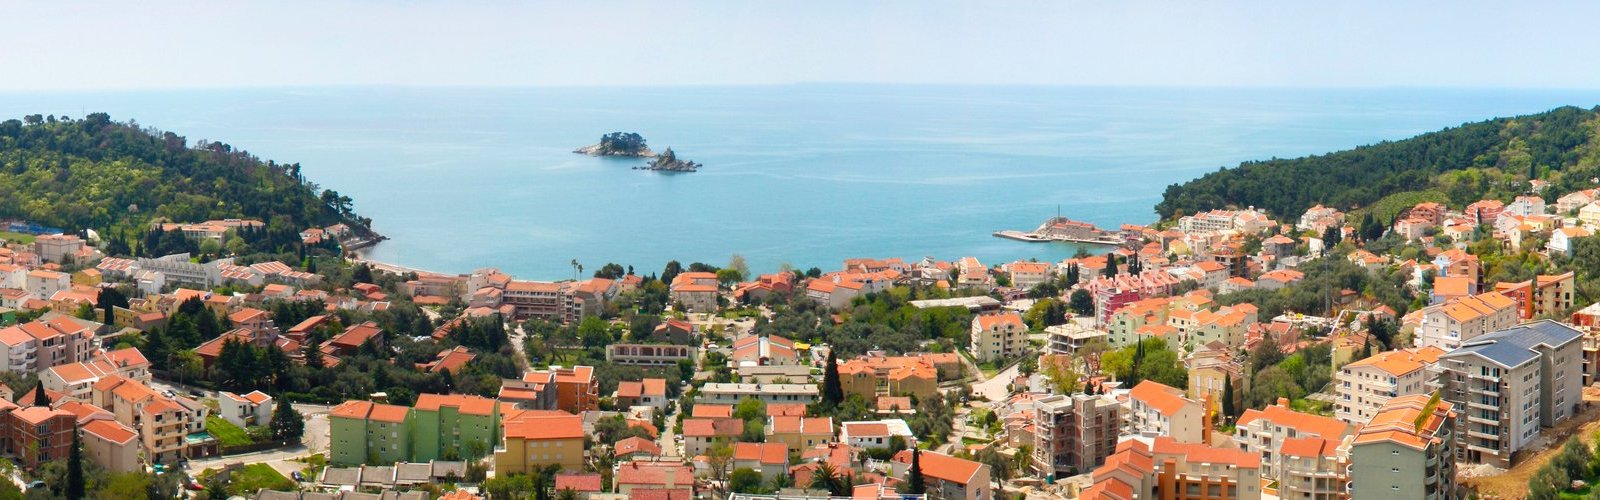 Будва черногория гостиницы и отели покупка недвижимости в венгрии